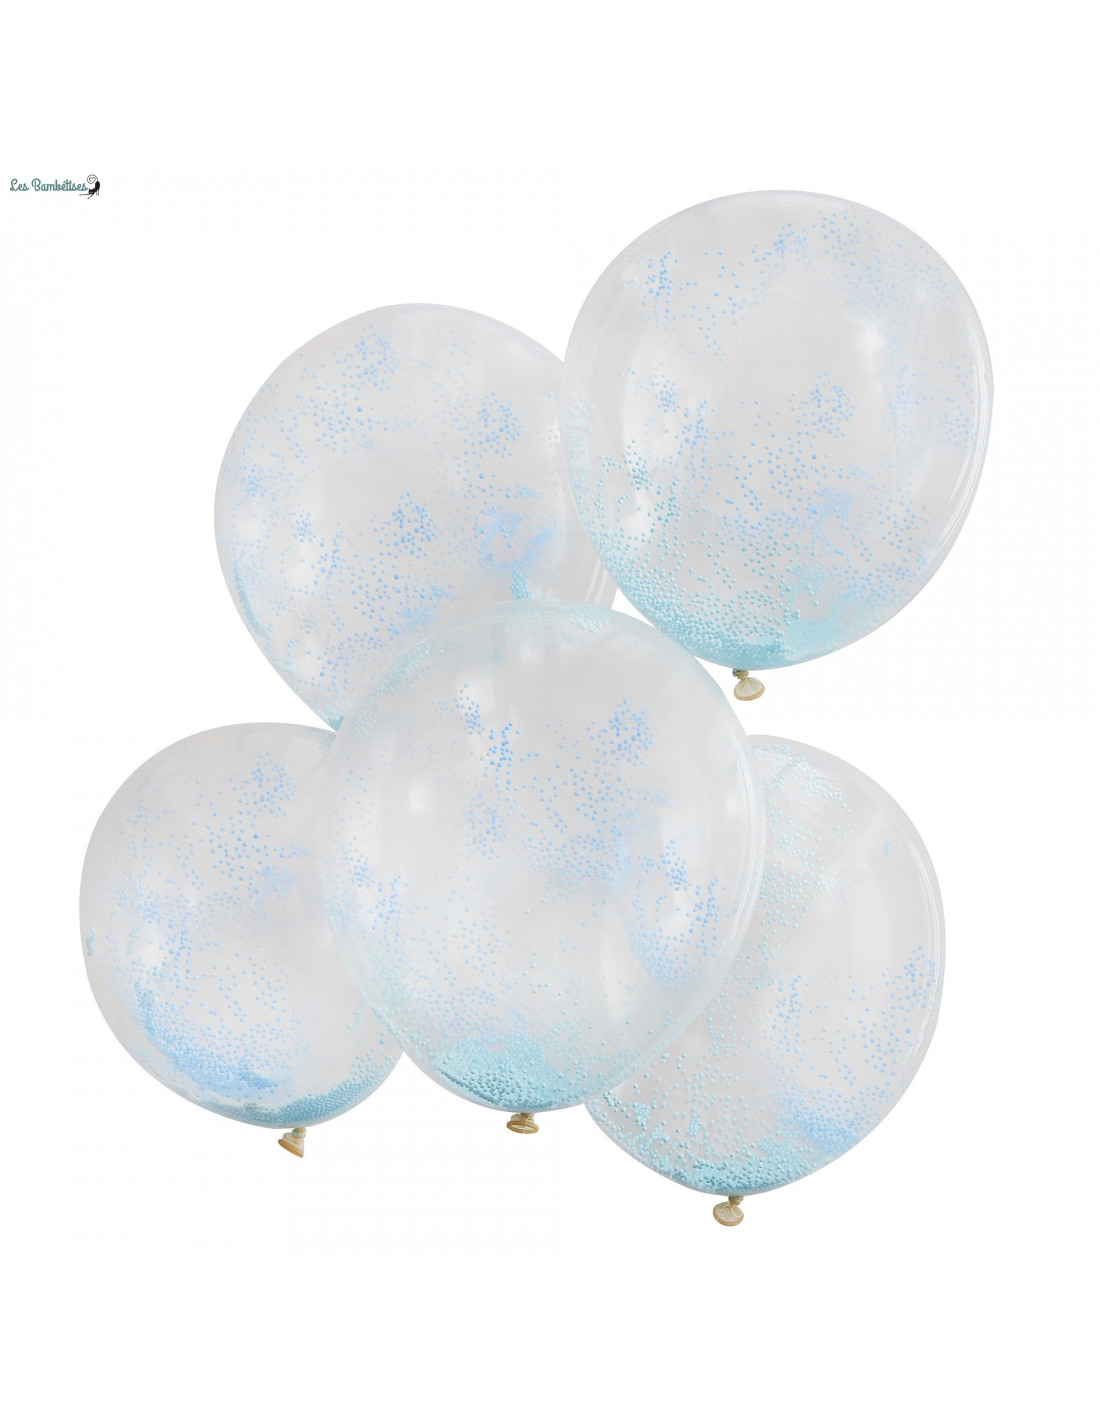 5 ballons de baudruche confettis vert et bleu : decoration fete